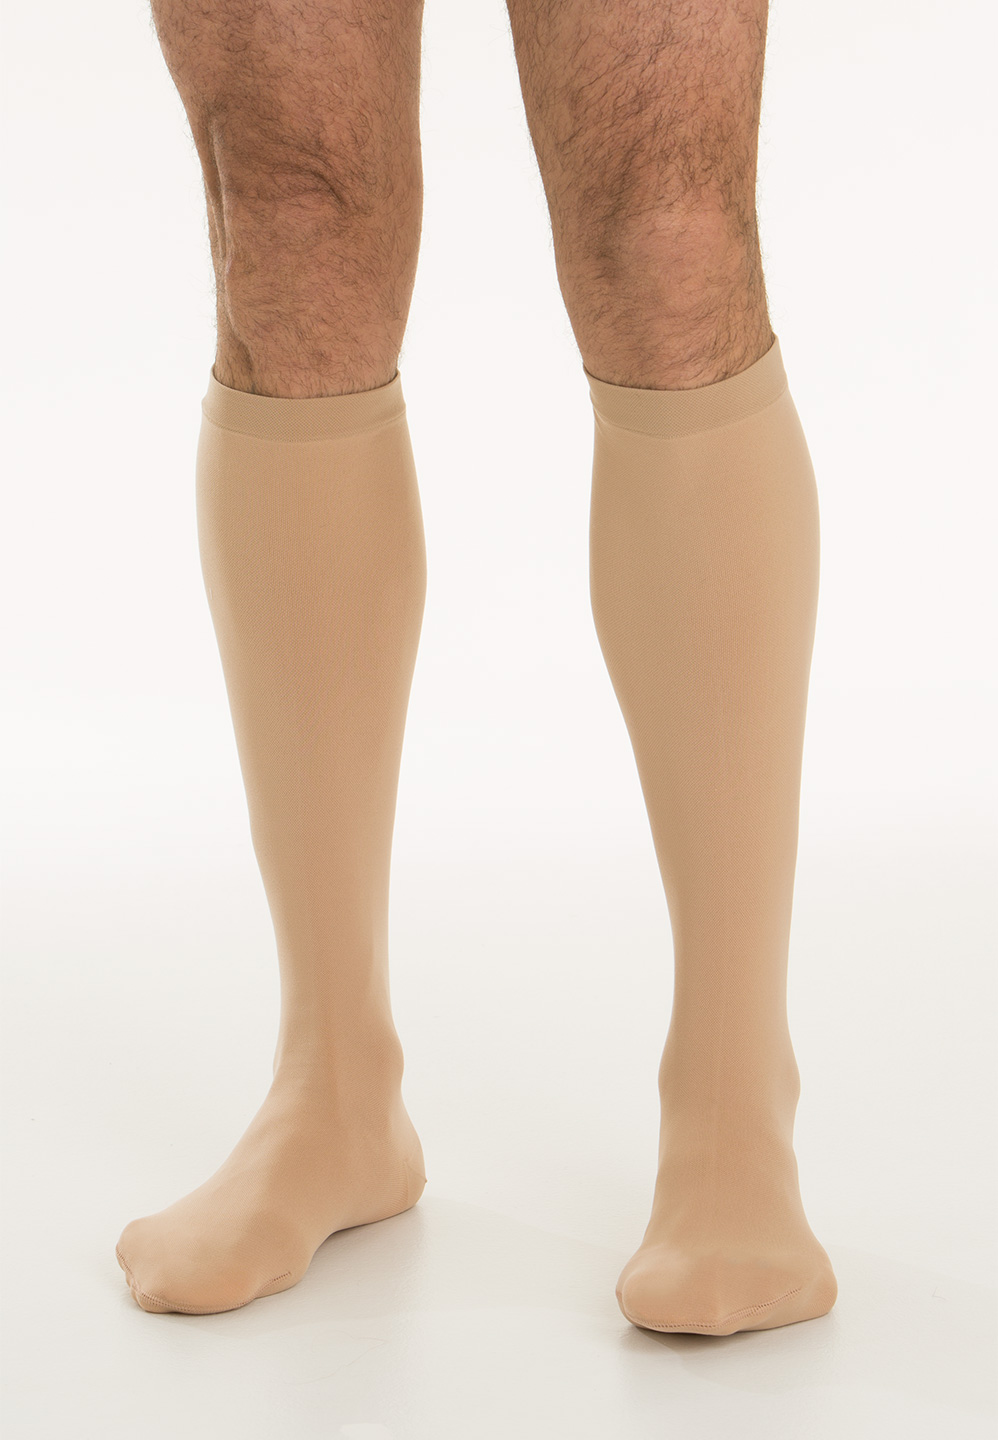 Zdravotnícke kompresné ponožky (standard) – trieda 3 (34-46 mmHg)